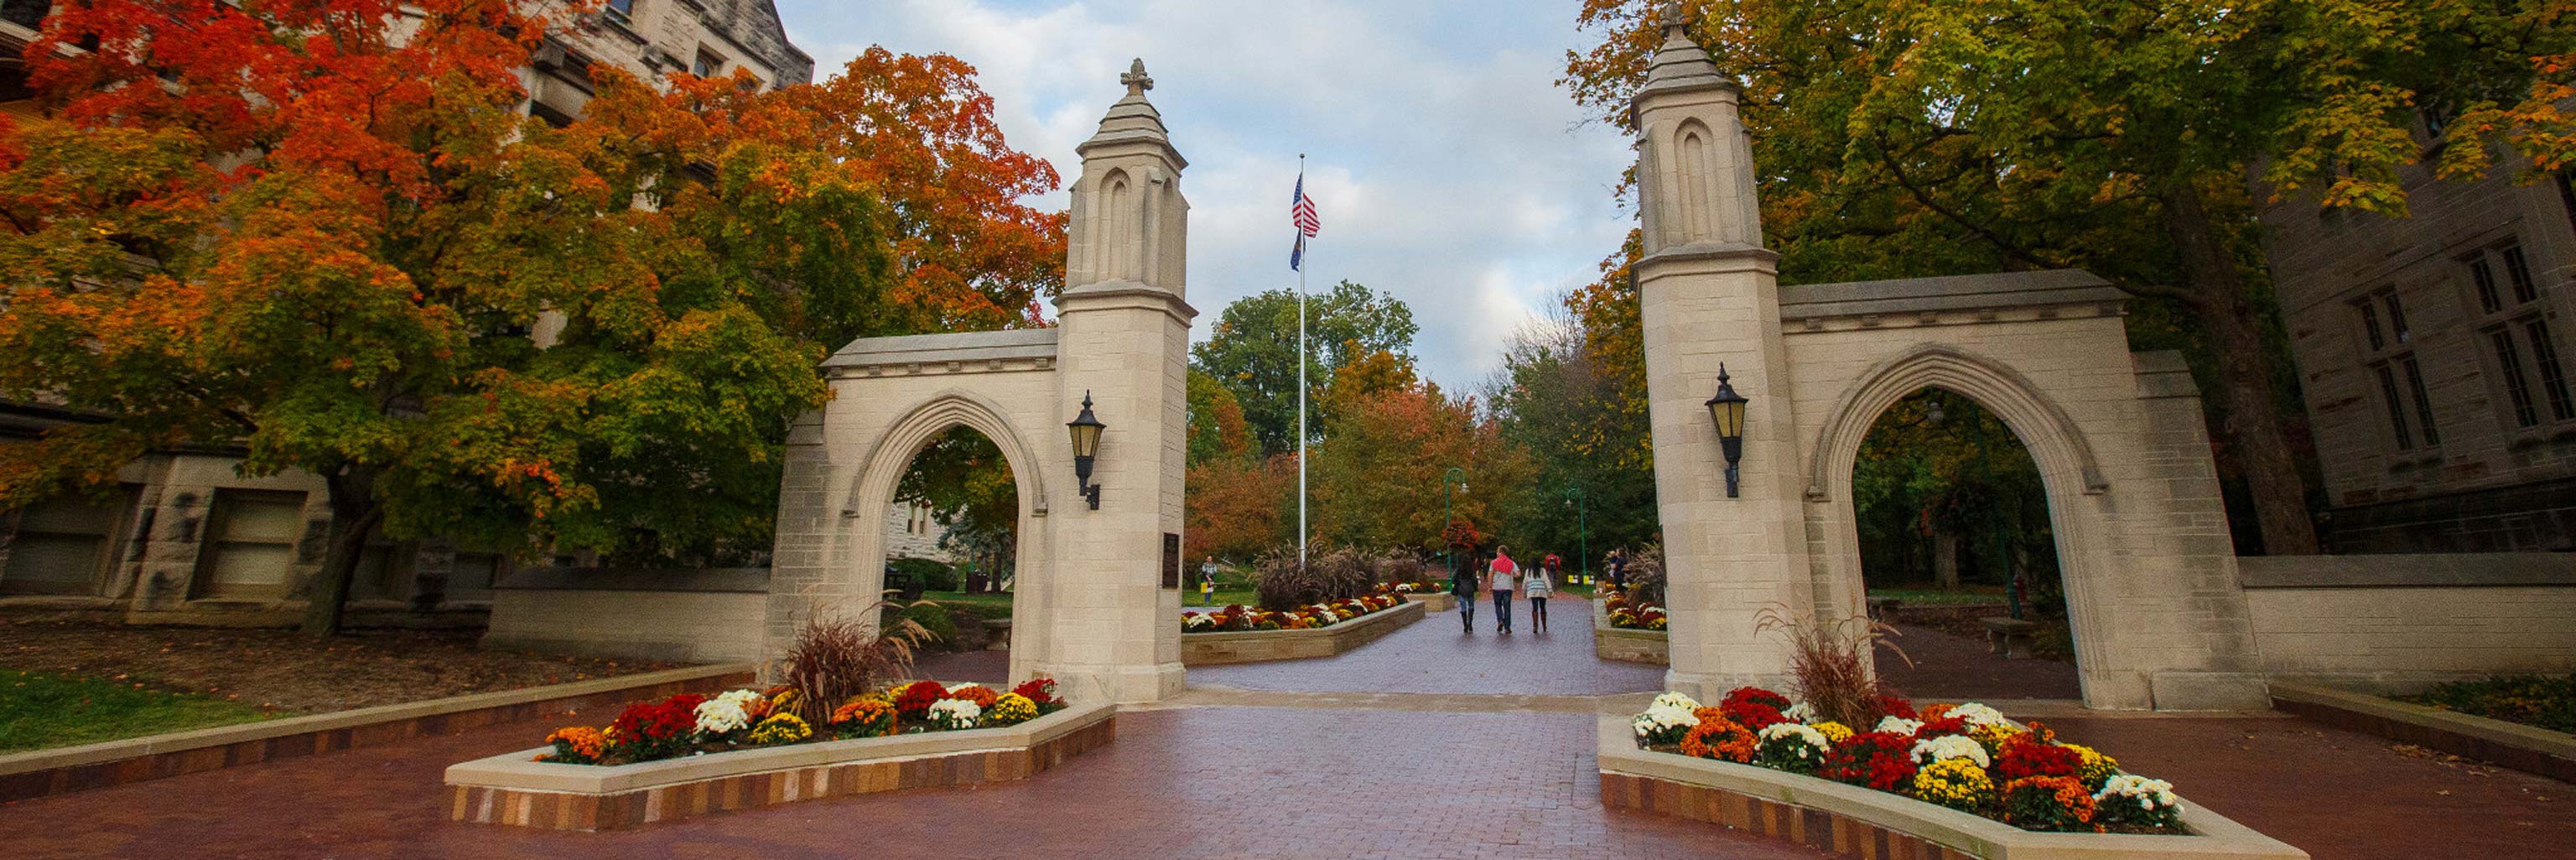 Sample gates on Indiana University on campus